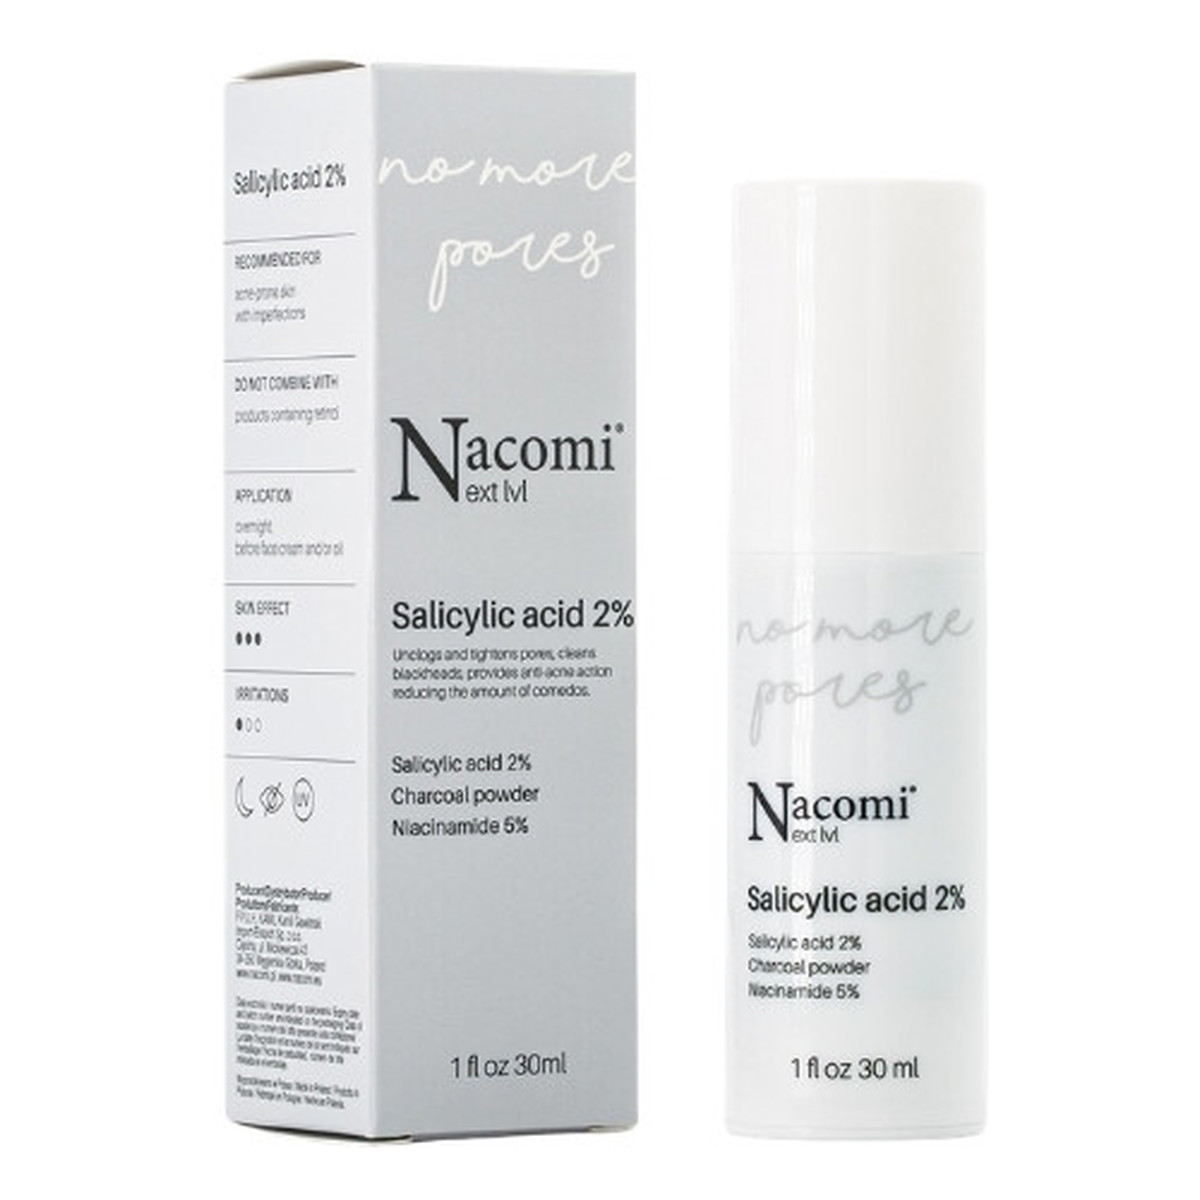 Nacomi Next Level Kwas salicylowy 2% serum do twarzy 30ml